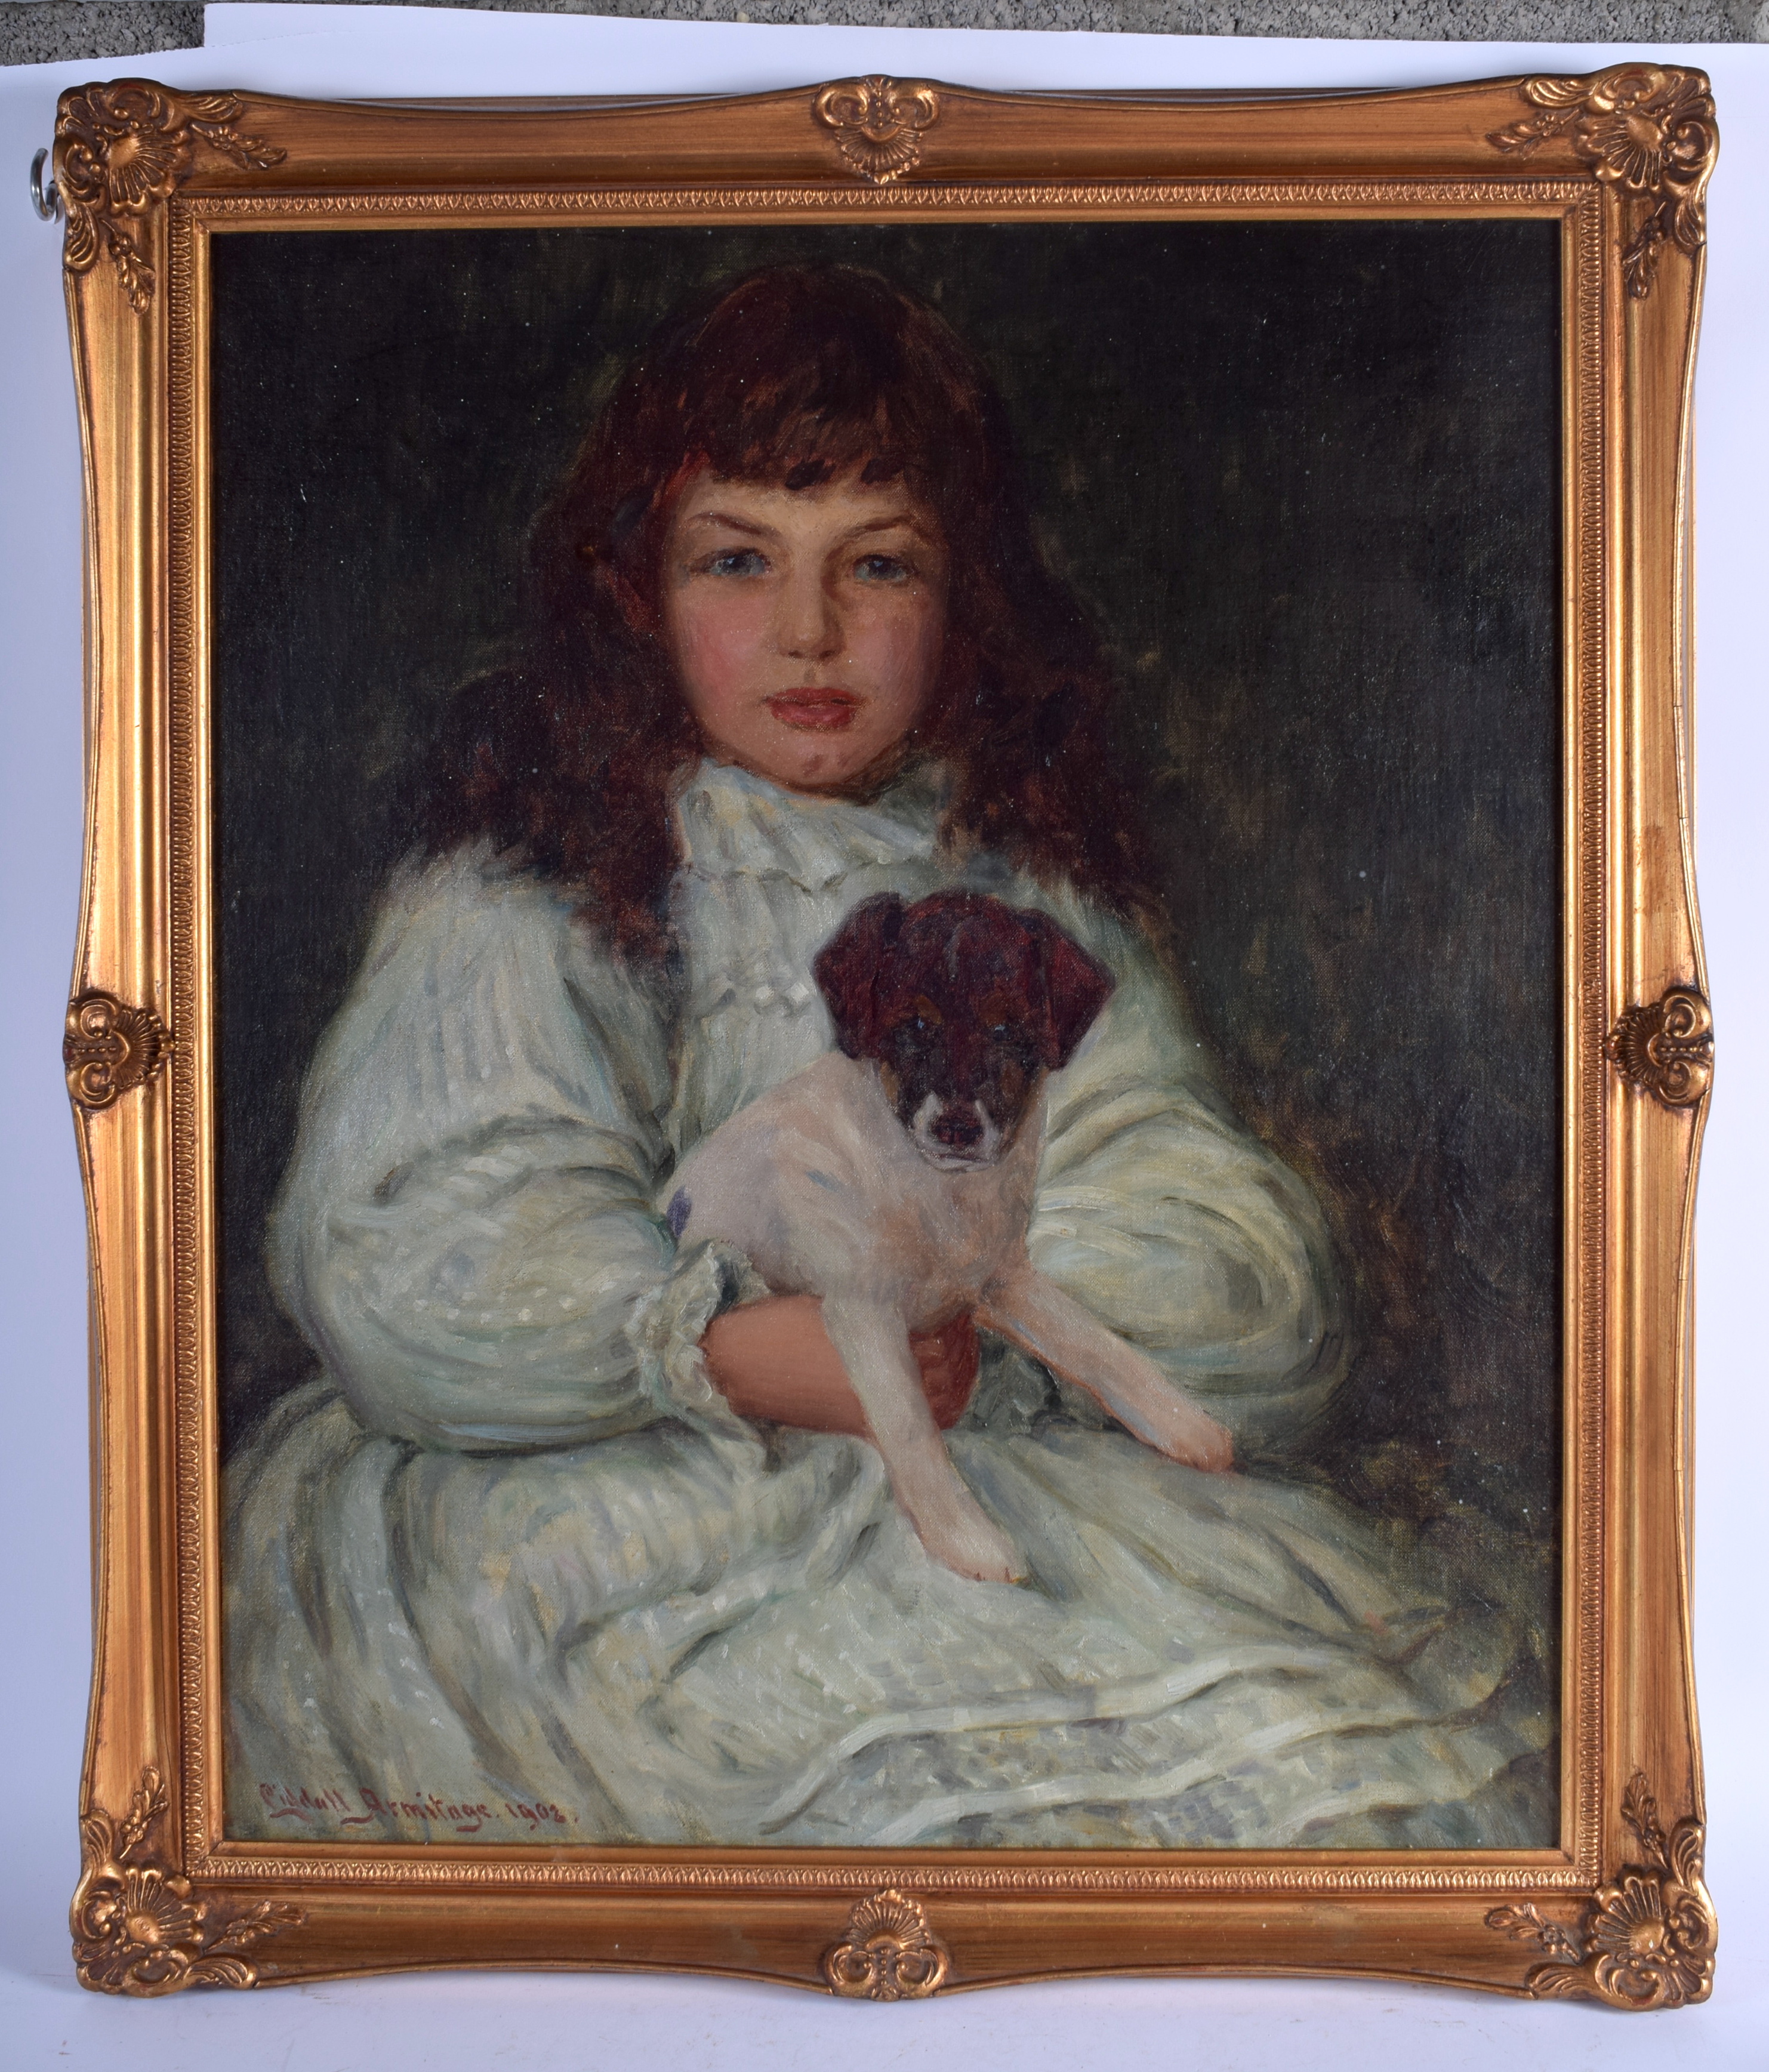 Edward Liddall Armitage (1887-1967) Oil on board, Girl and dog. 58 cm x 51 cm.